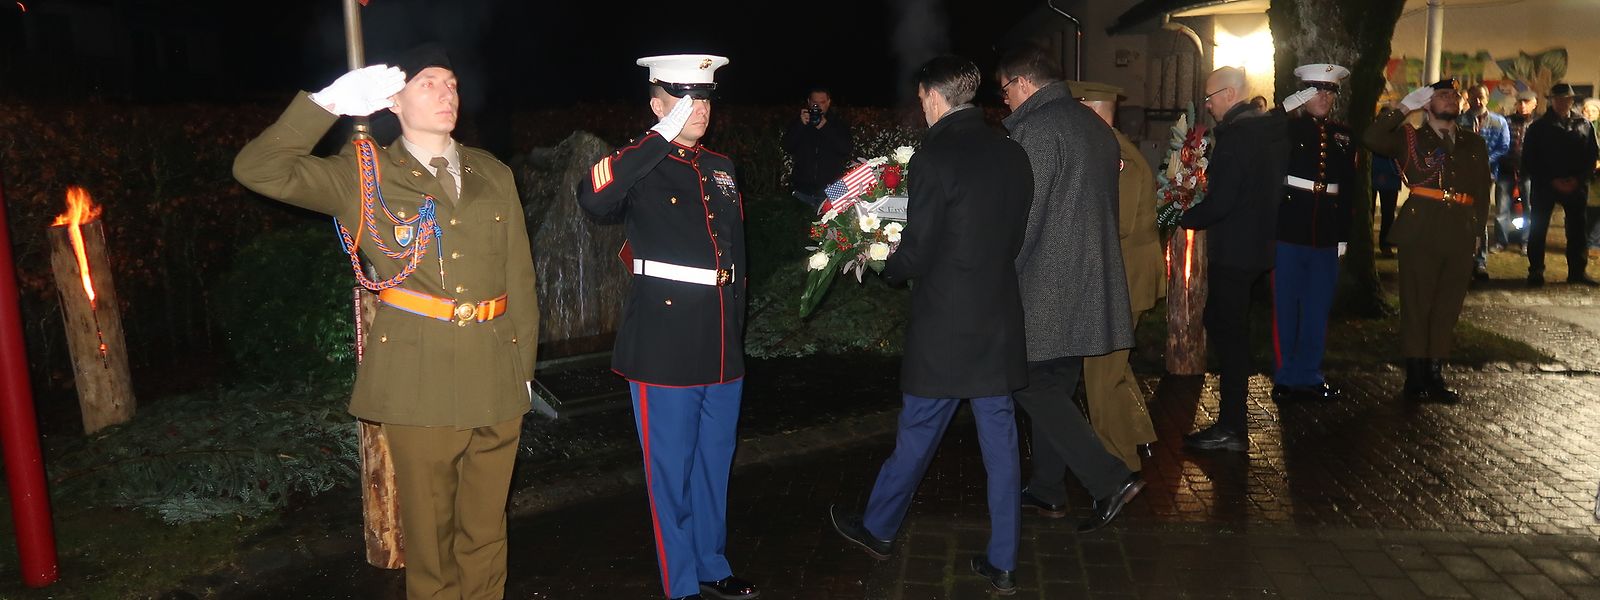 Am frühen Morgen legen Vertreter der US-Botschaft, der Gemeinde Park Hosingen, der Armee und der „US Veterans Friends Luxembourg“ Blumen am Denkmal für die fünfte Infanteriedivision nieder.